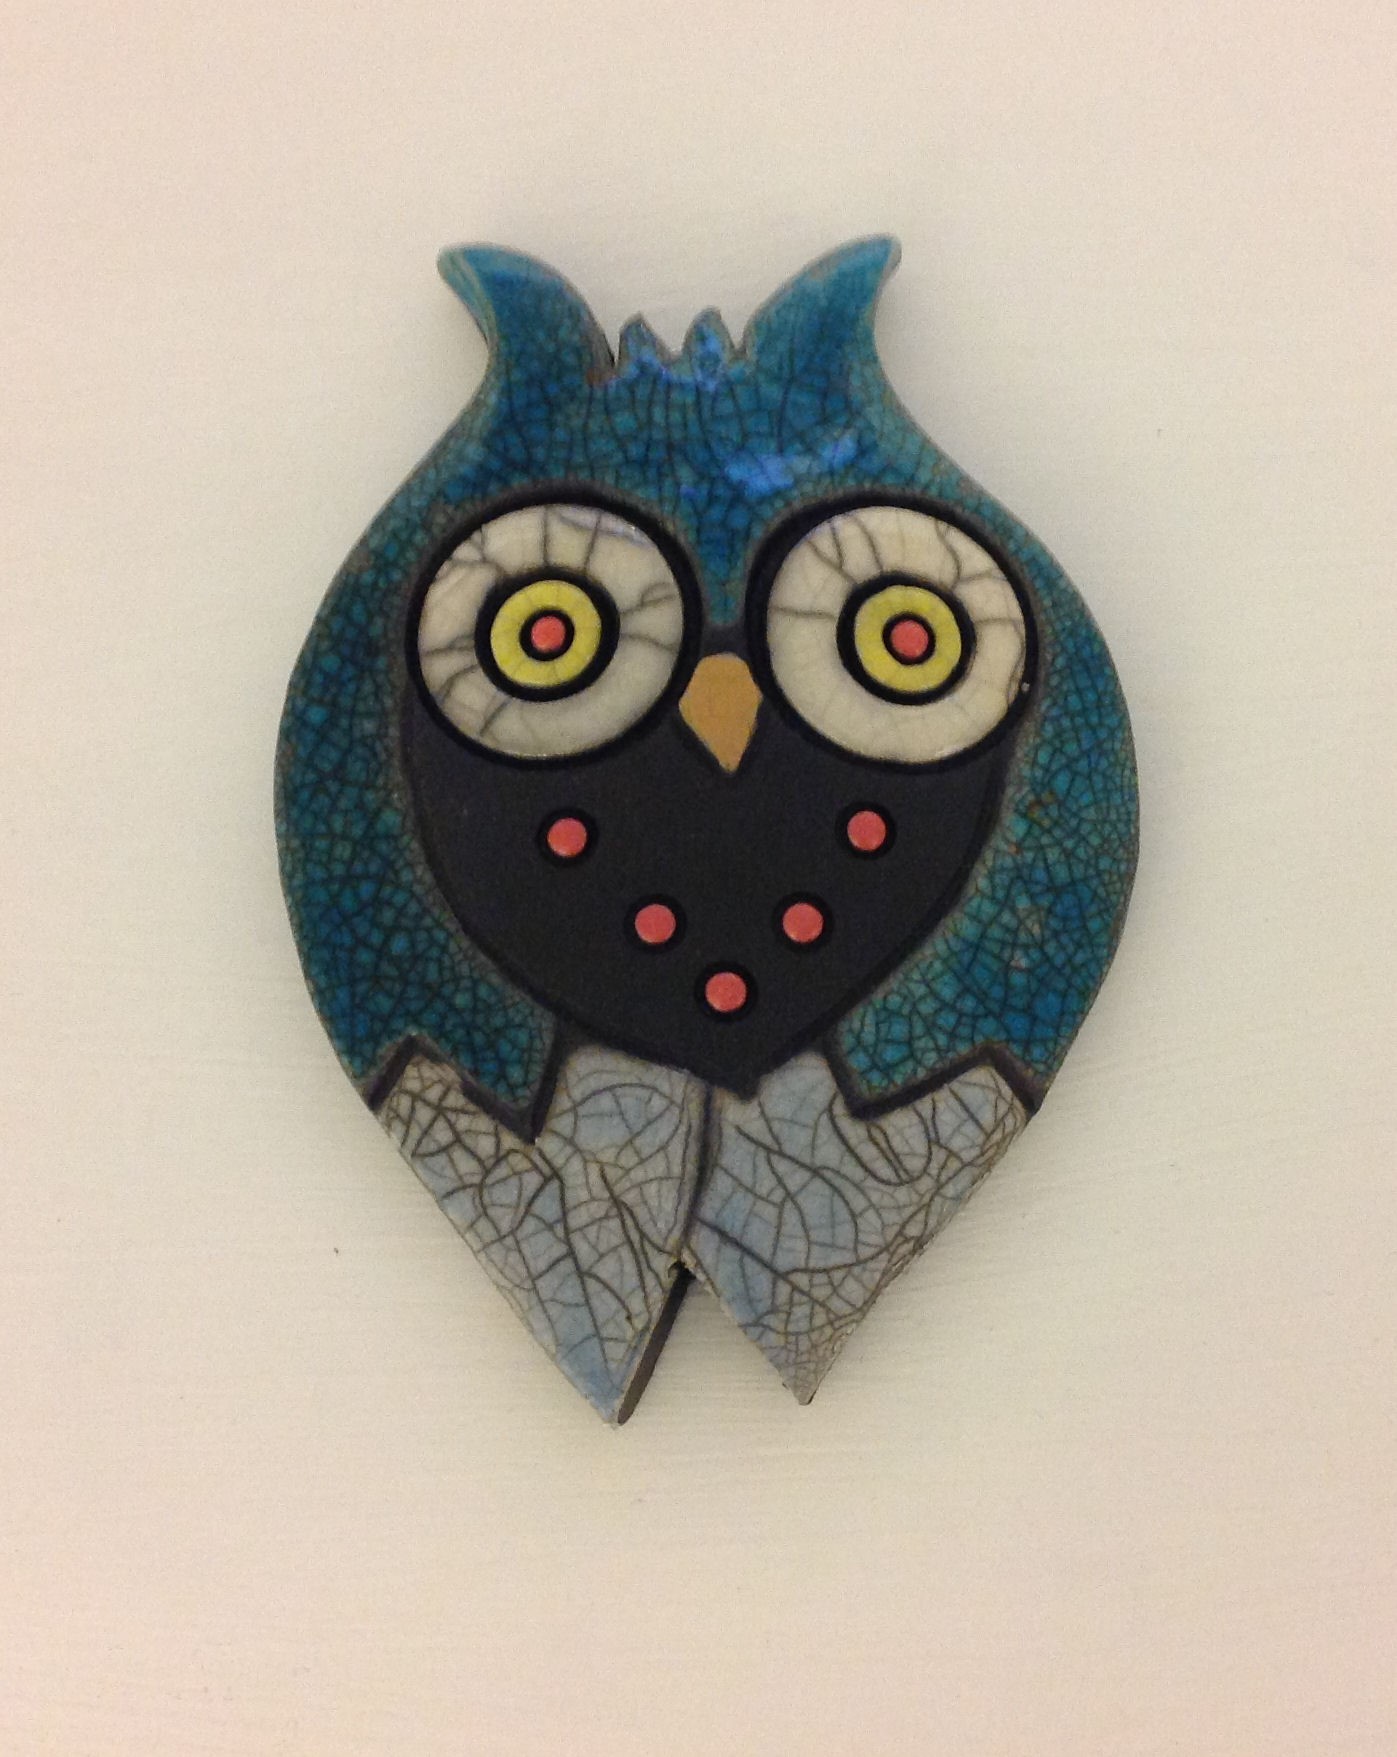 'Owl Small II' by artist Julian Smith